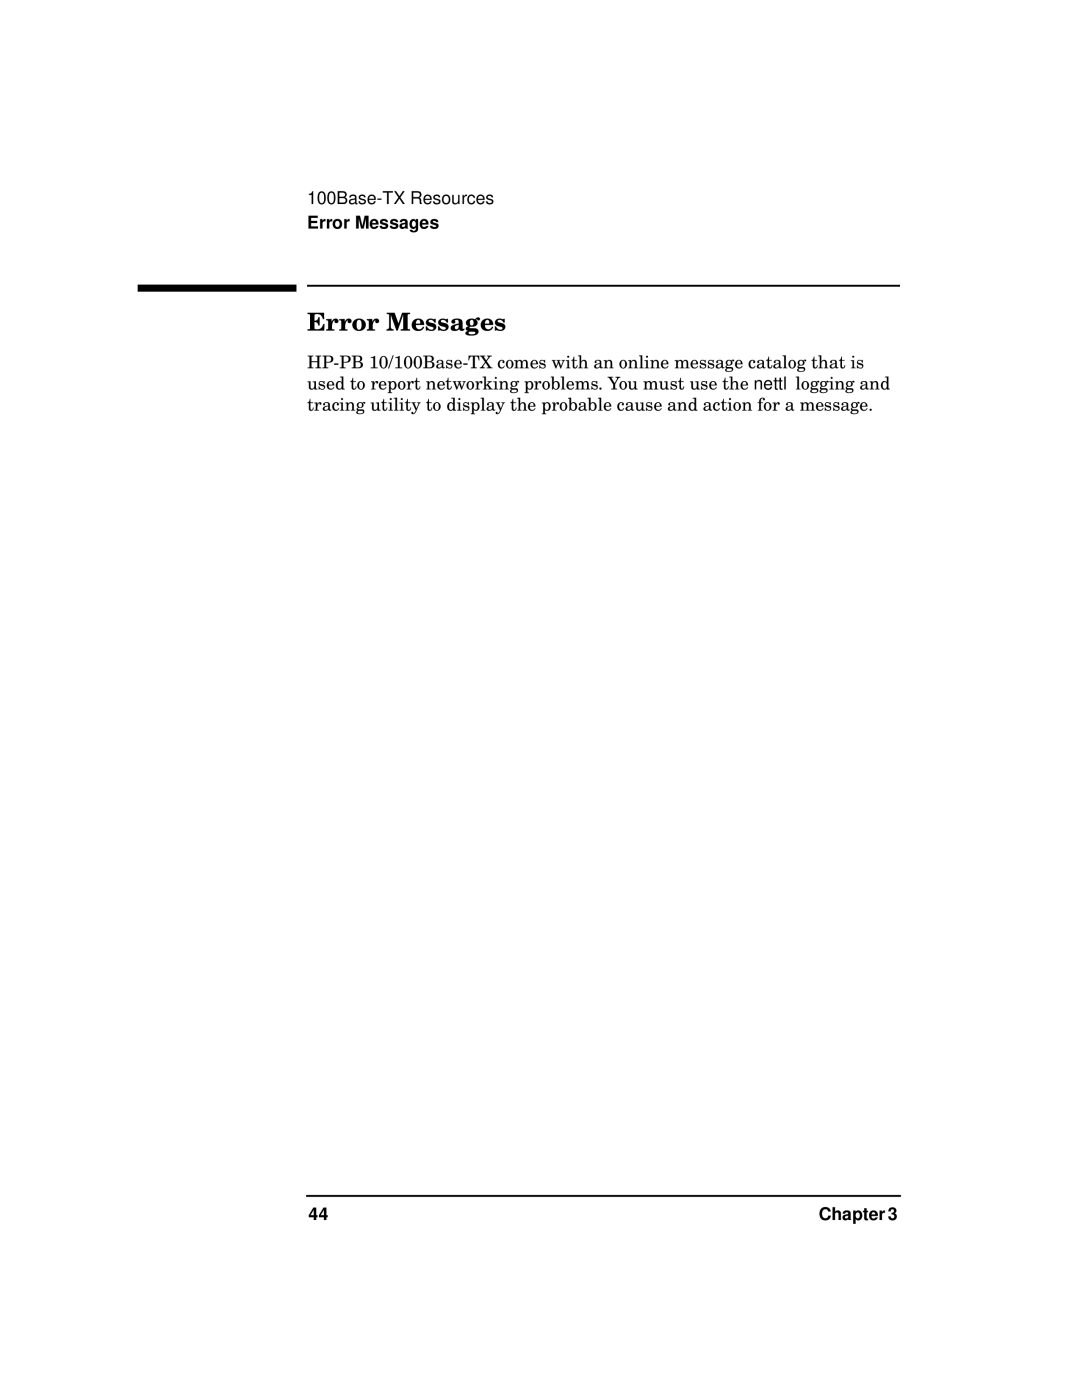 HP PB 10 manual Error Messages 